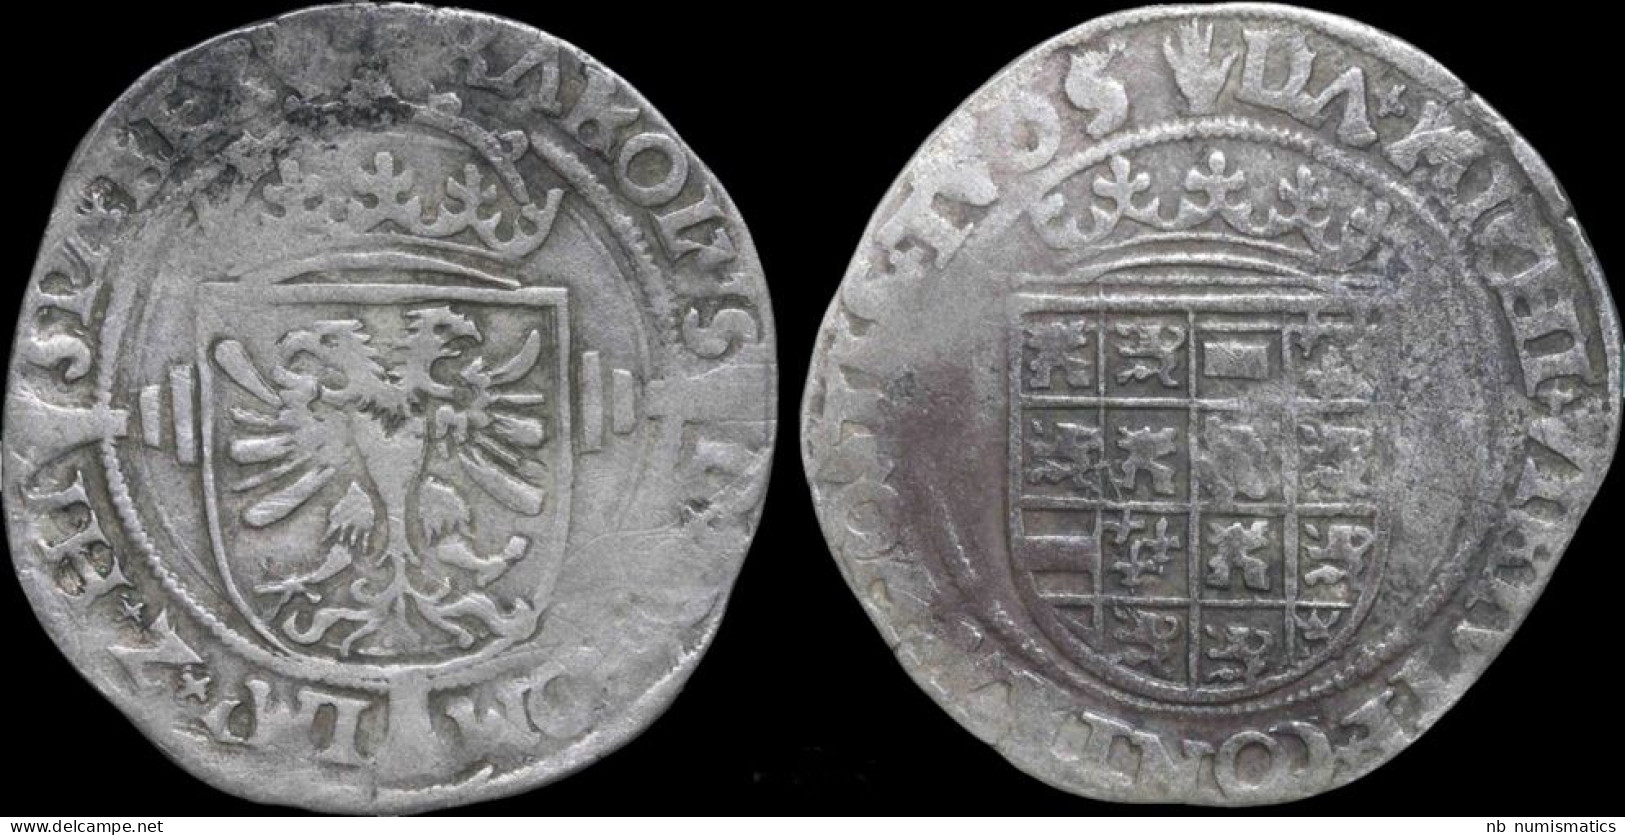 Southern Netherlands Brabant Karel V (Charles Quint) 1/2 Silver Real No Date - 1556-1713 Spanish Netherlands